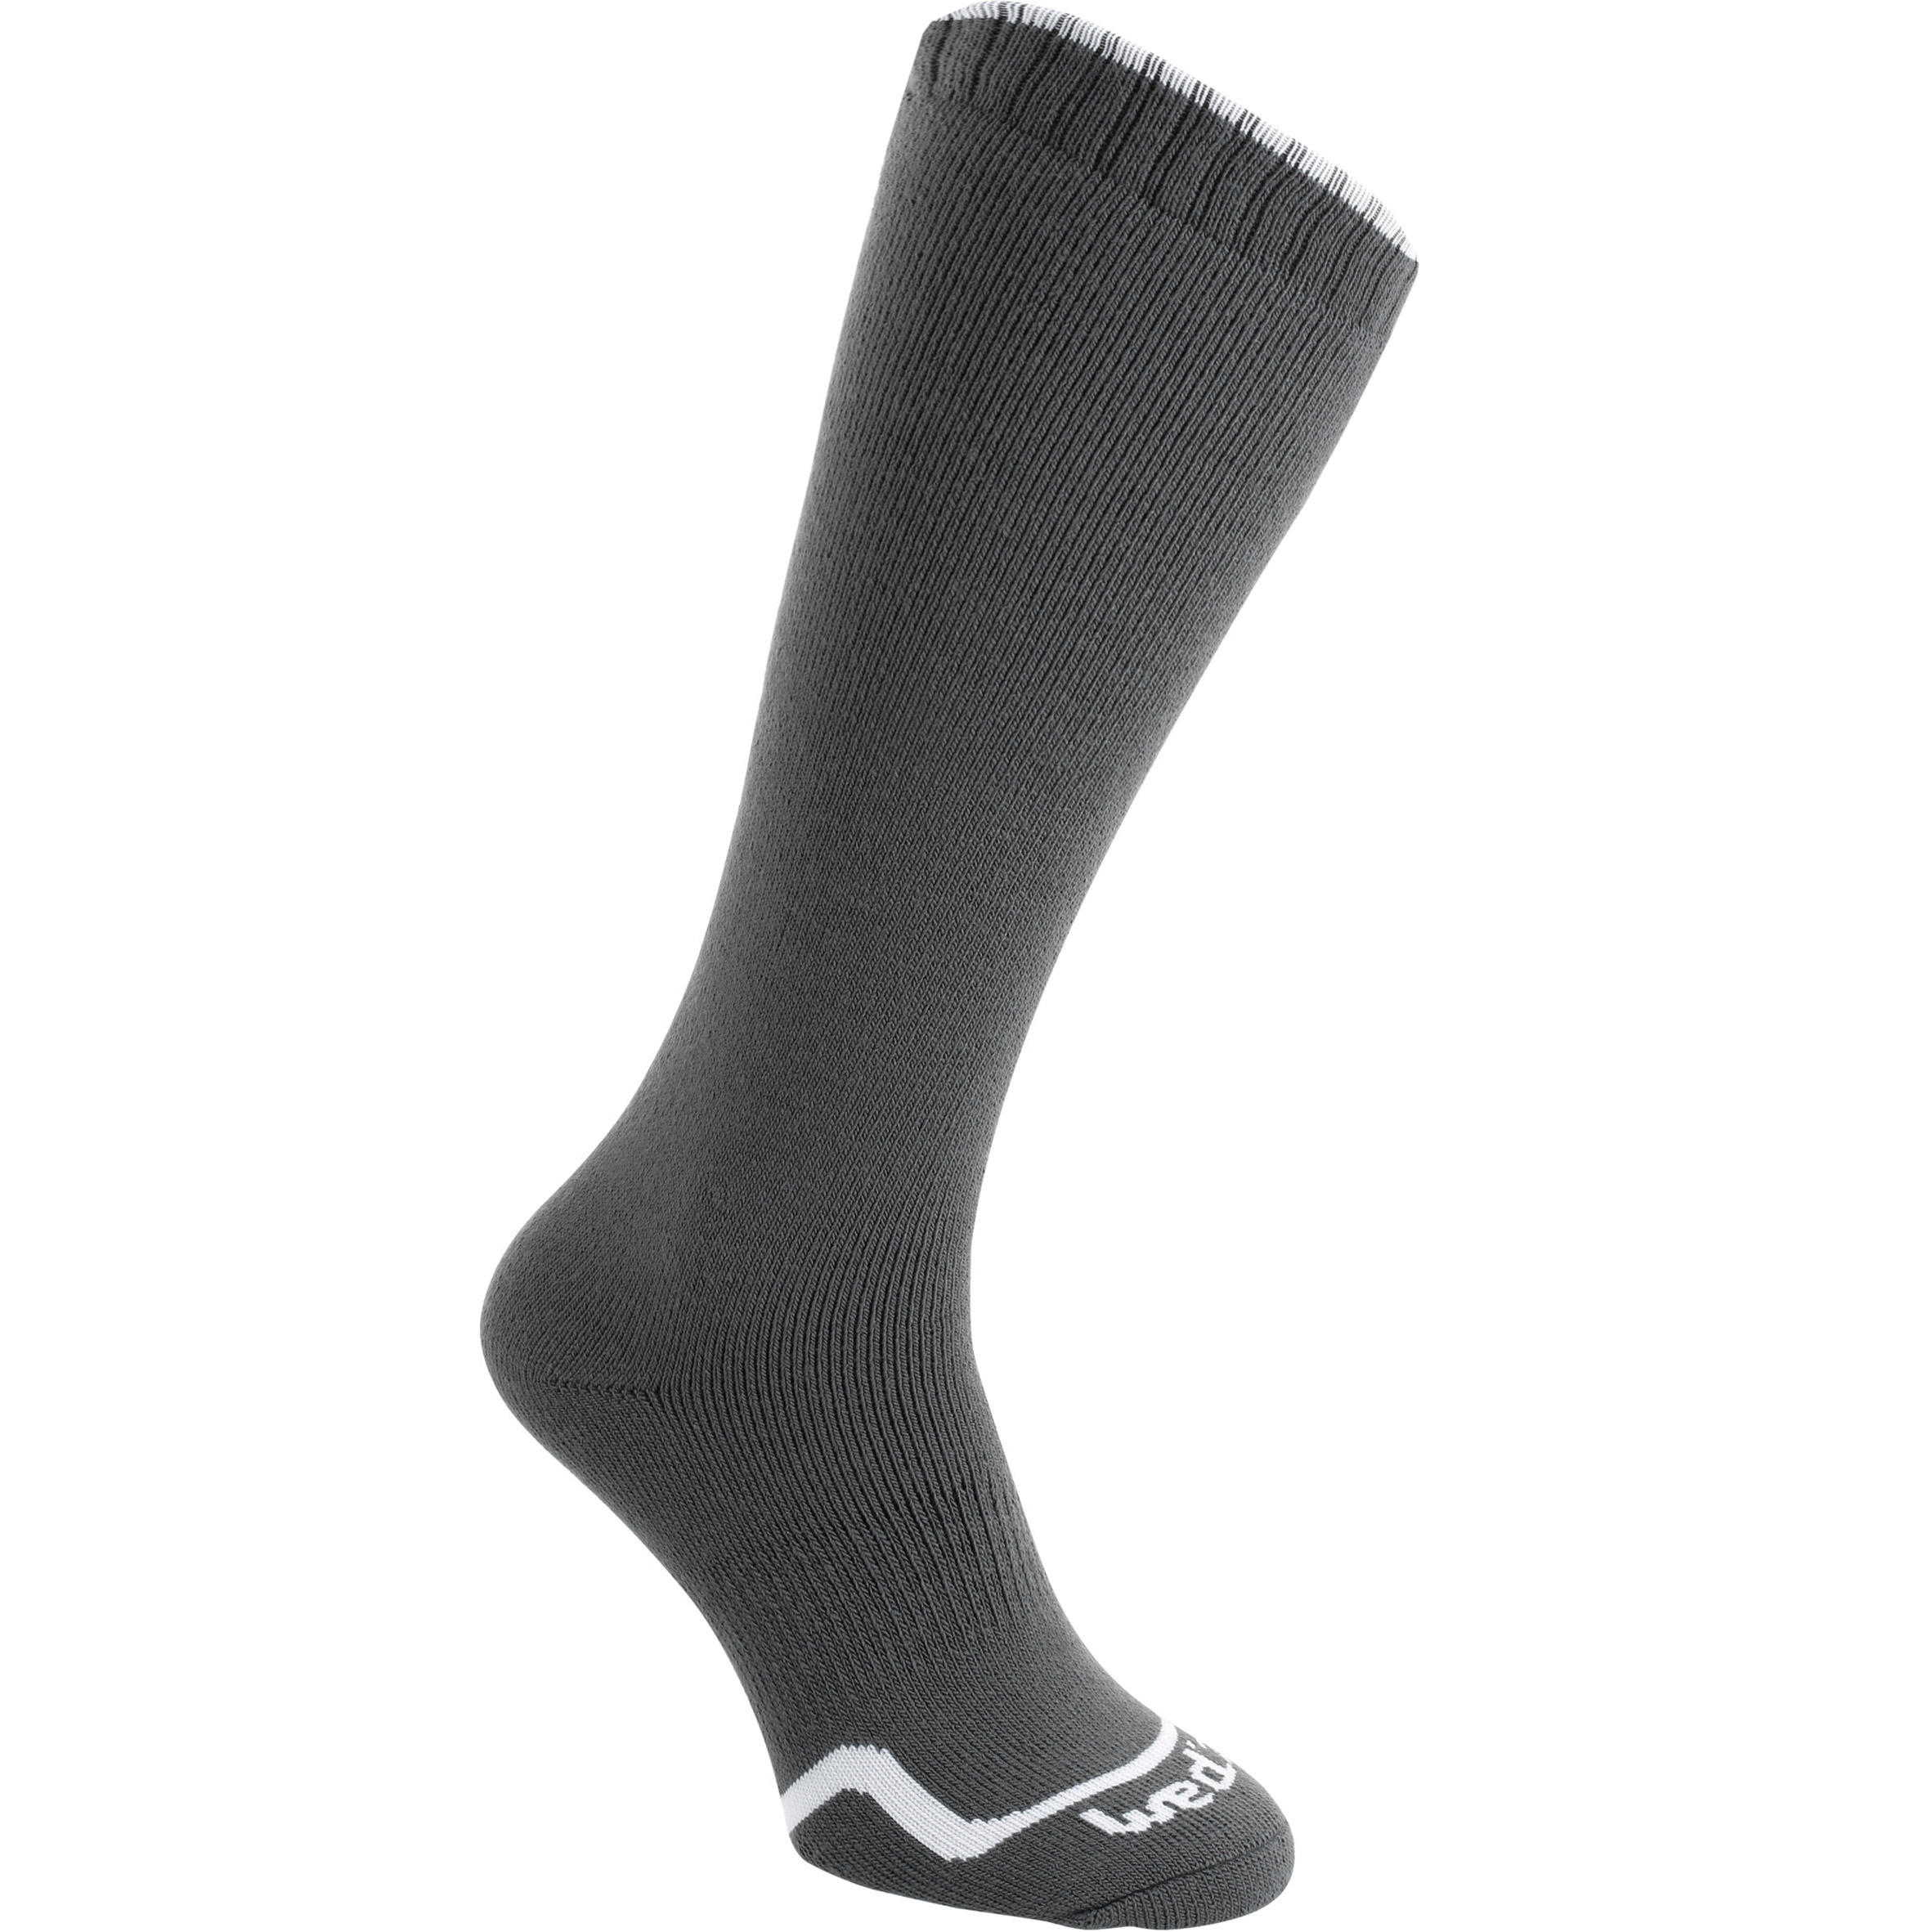 socks online|woolen socks|2 yrs warranty